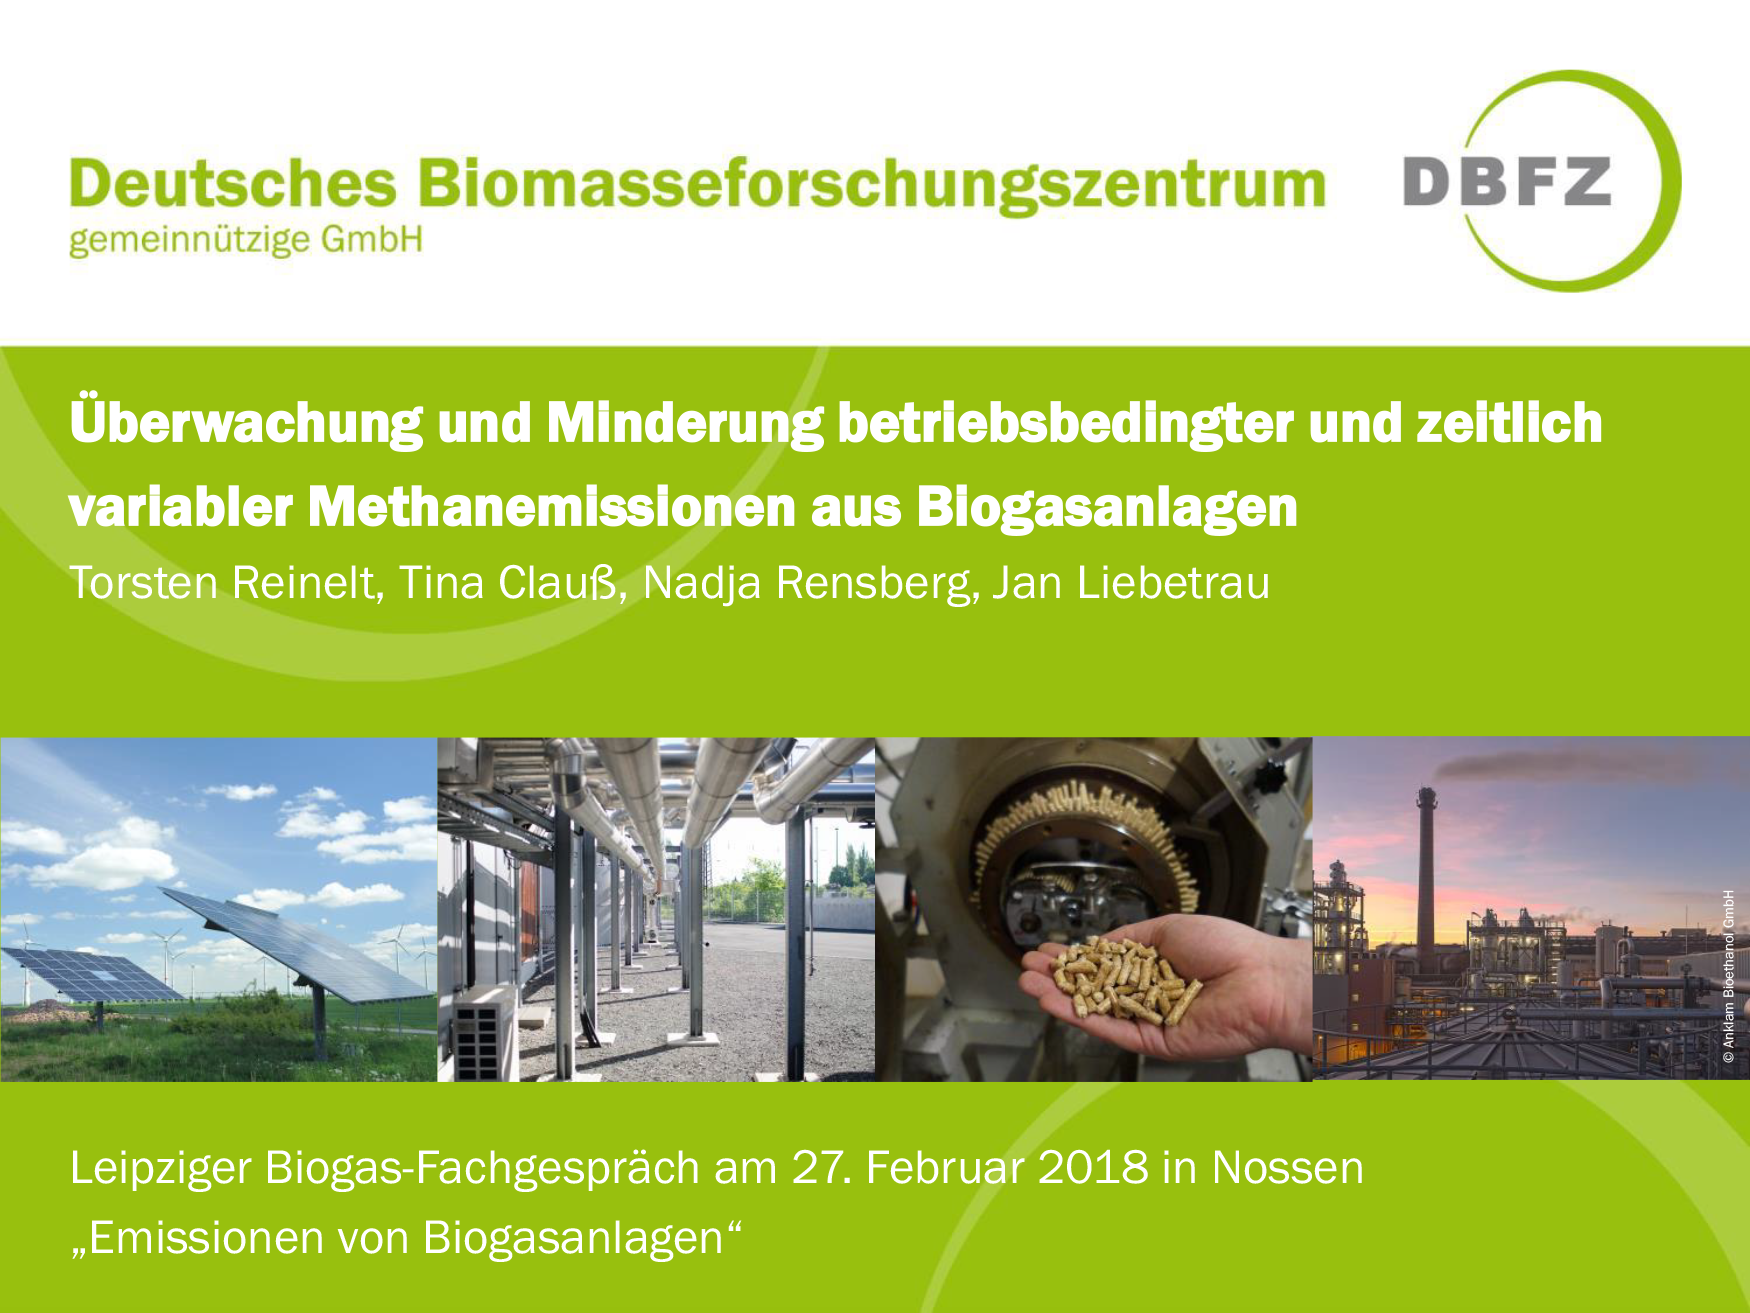 Vorträge des Biogas-Fachgesprächs vom 27.2.2018 (Nossen)